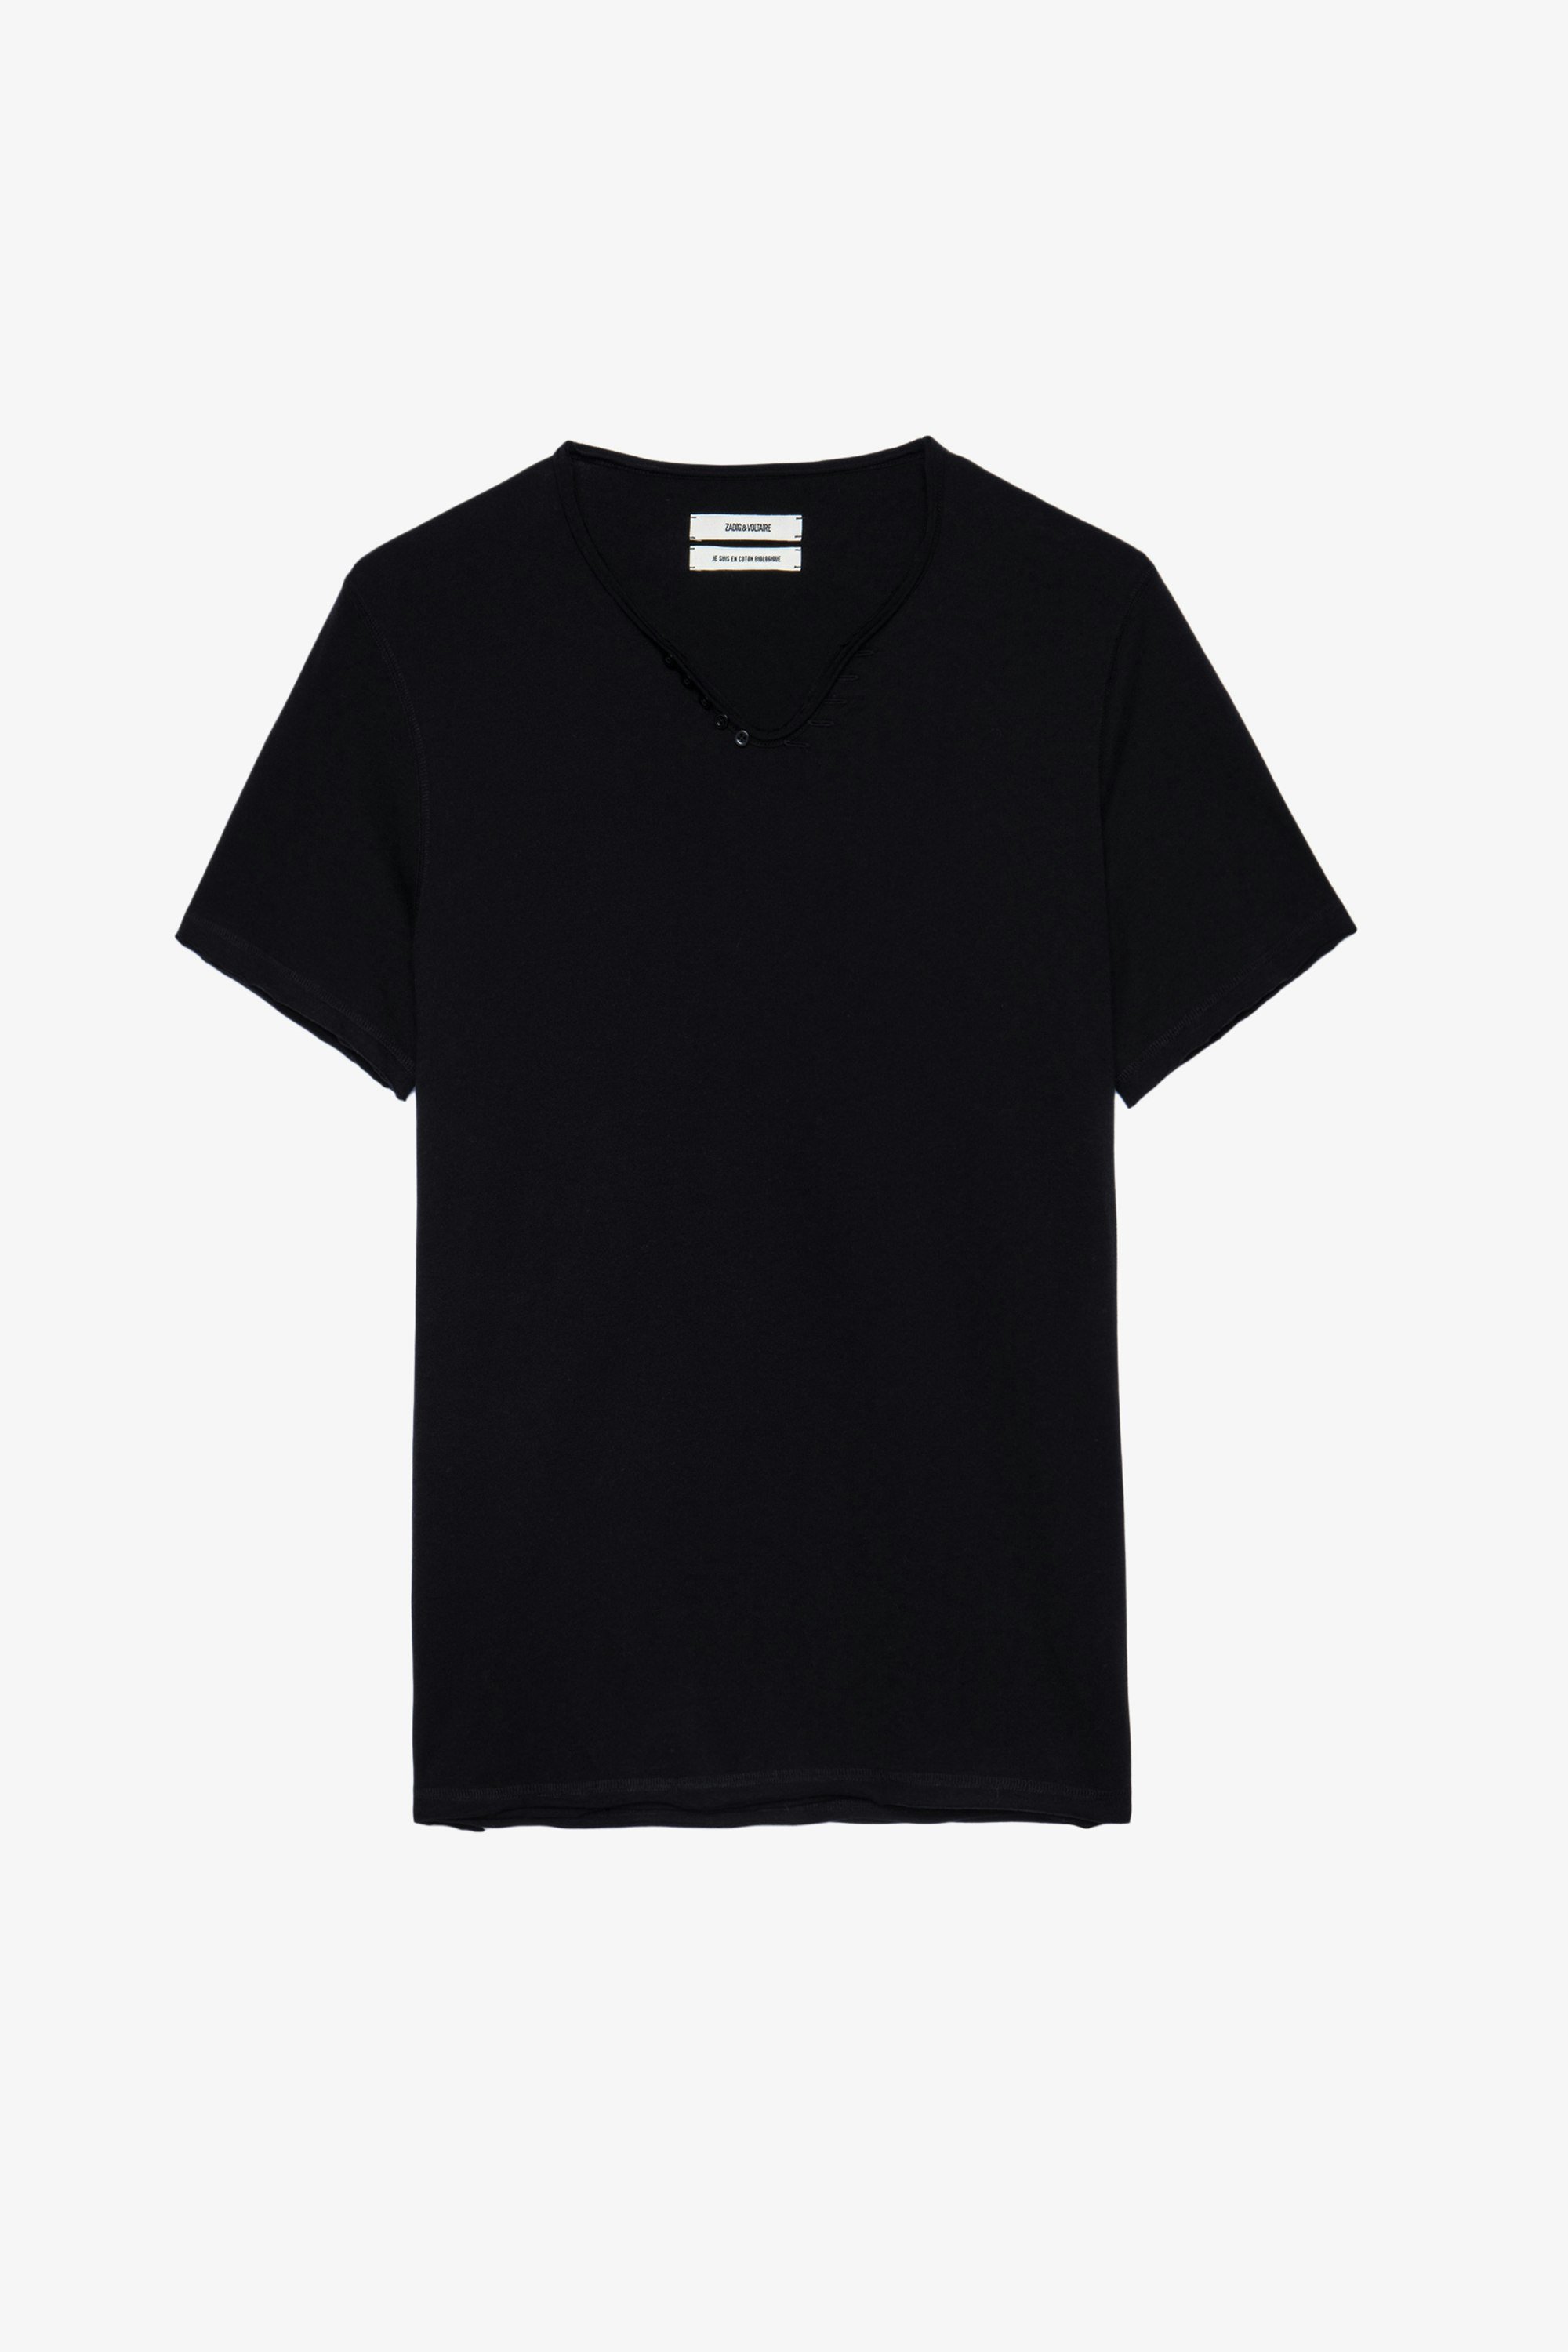 Tunisien Monastir - Camiseta negra para con cuello tunecino de algodón